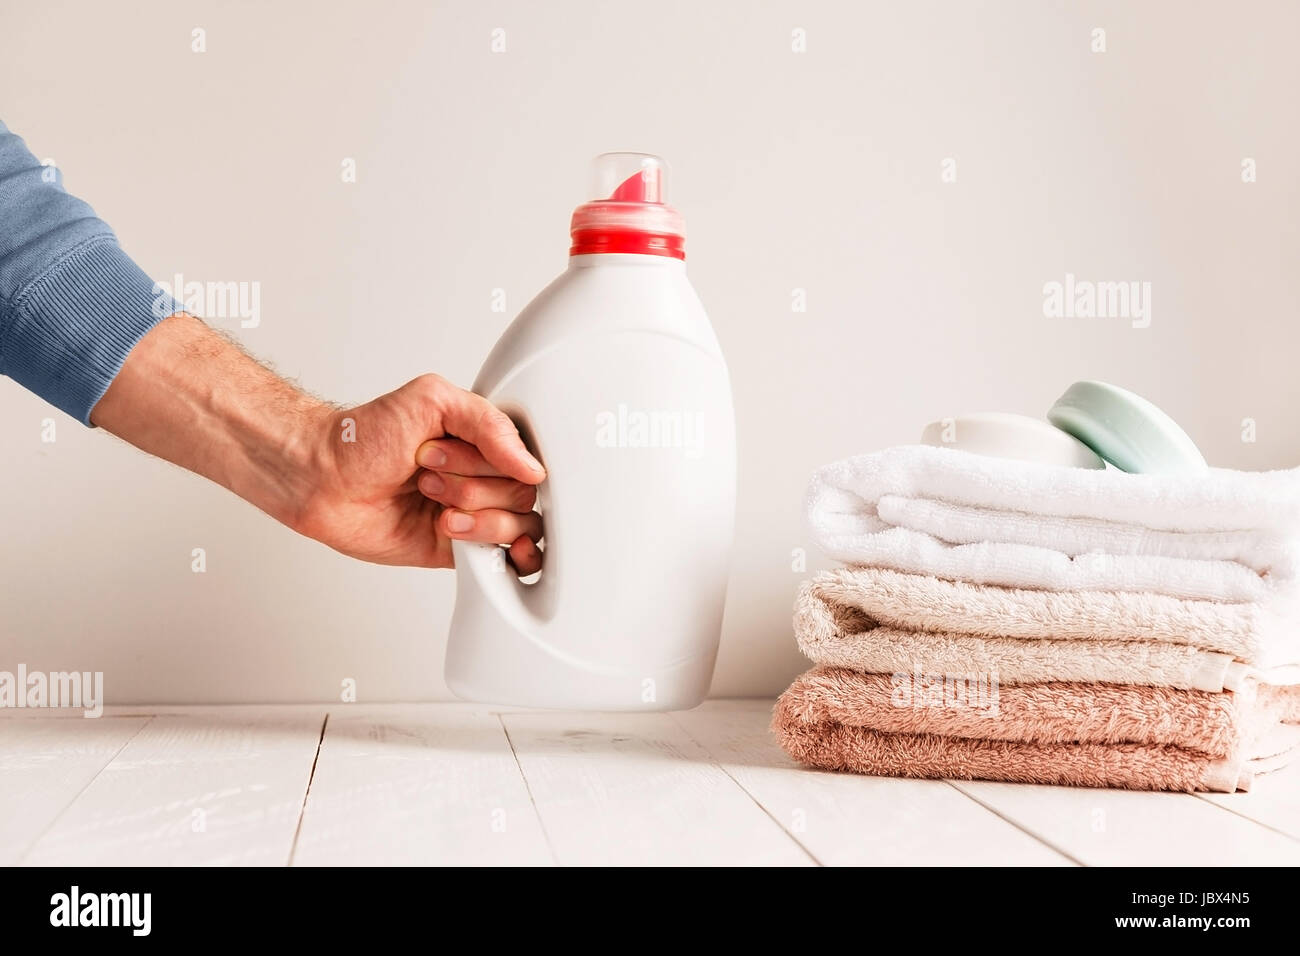 Die Hand des Mannes, auf dem Tisch ein Glas mit Gel zum Waschen von Kleidung. Vor dem Hintergrund der einen Stapel Handtücher und Seife. Stockfoto